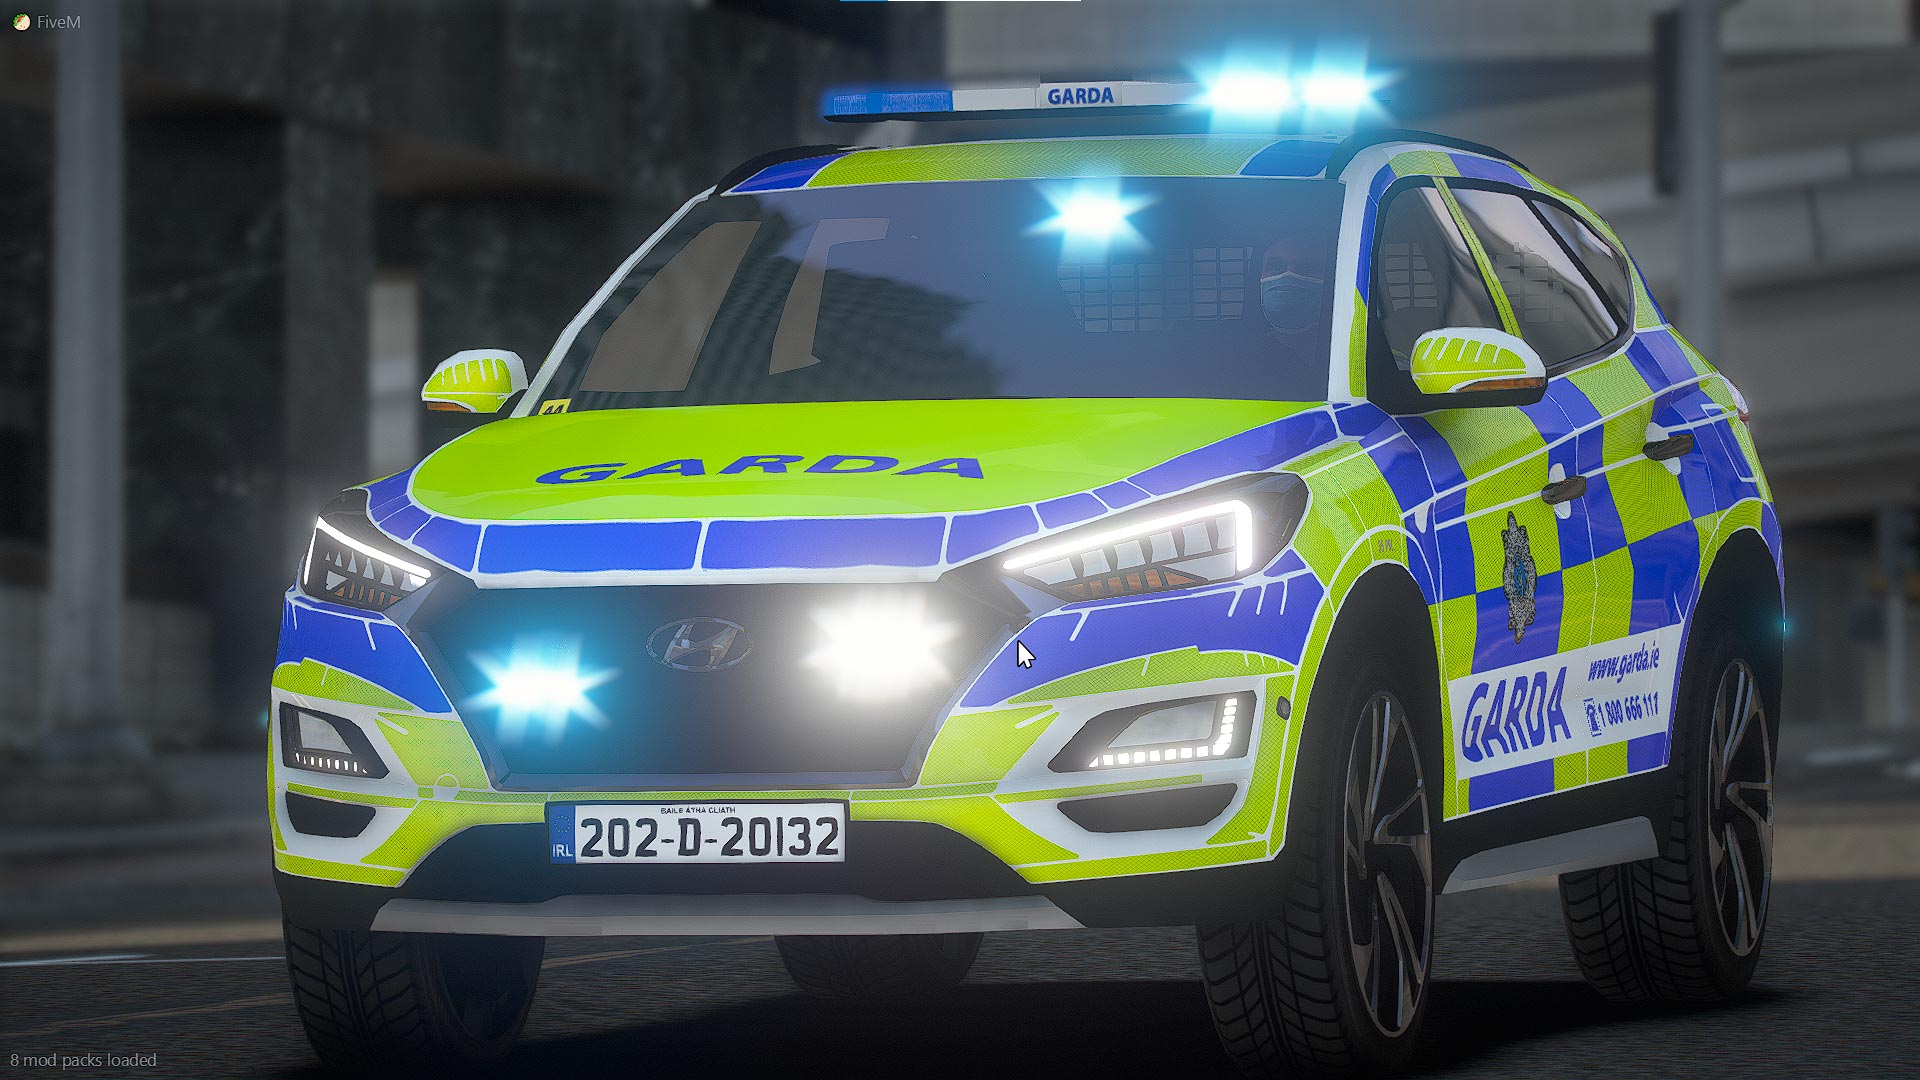 Irelands Emergency Services Garda Patrol Car